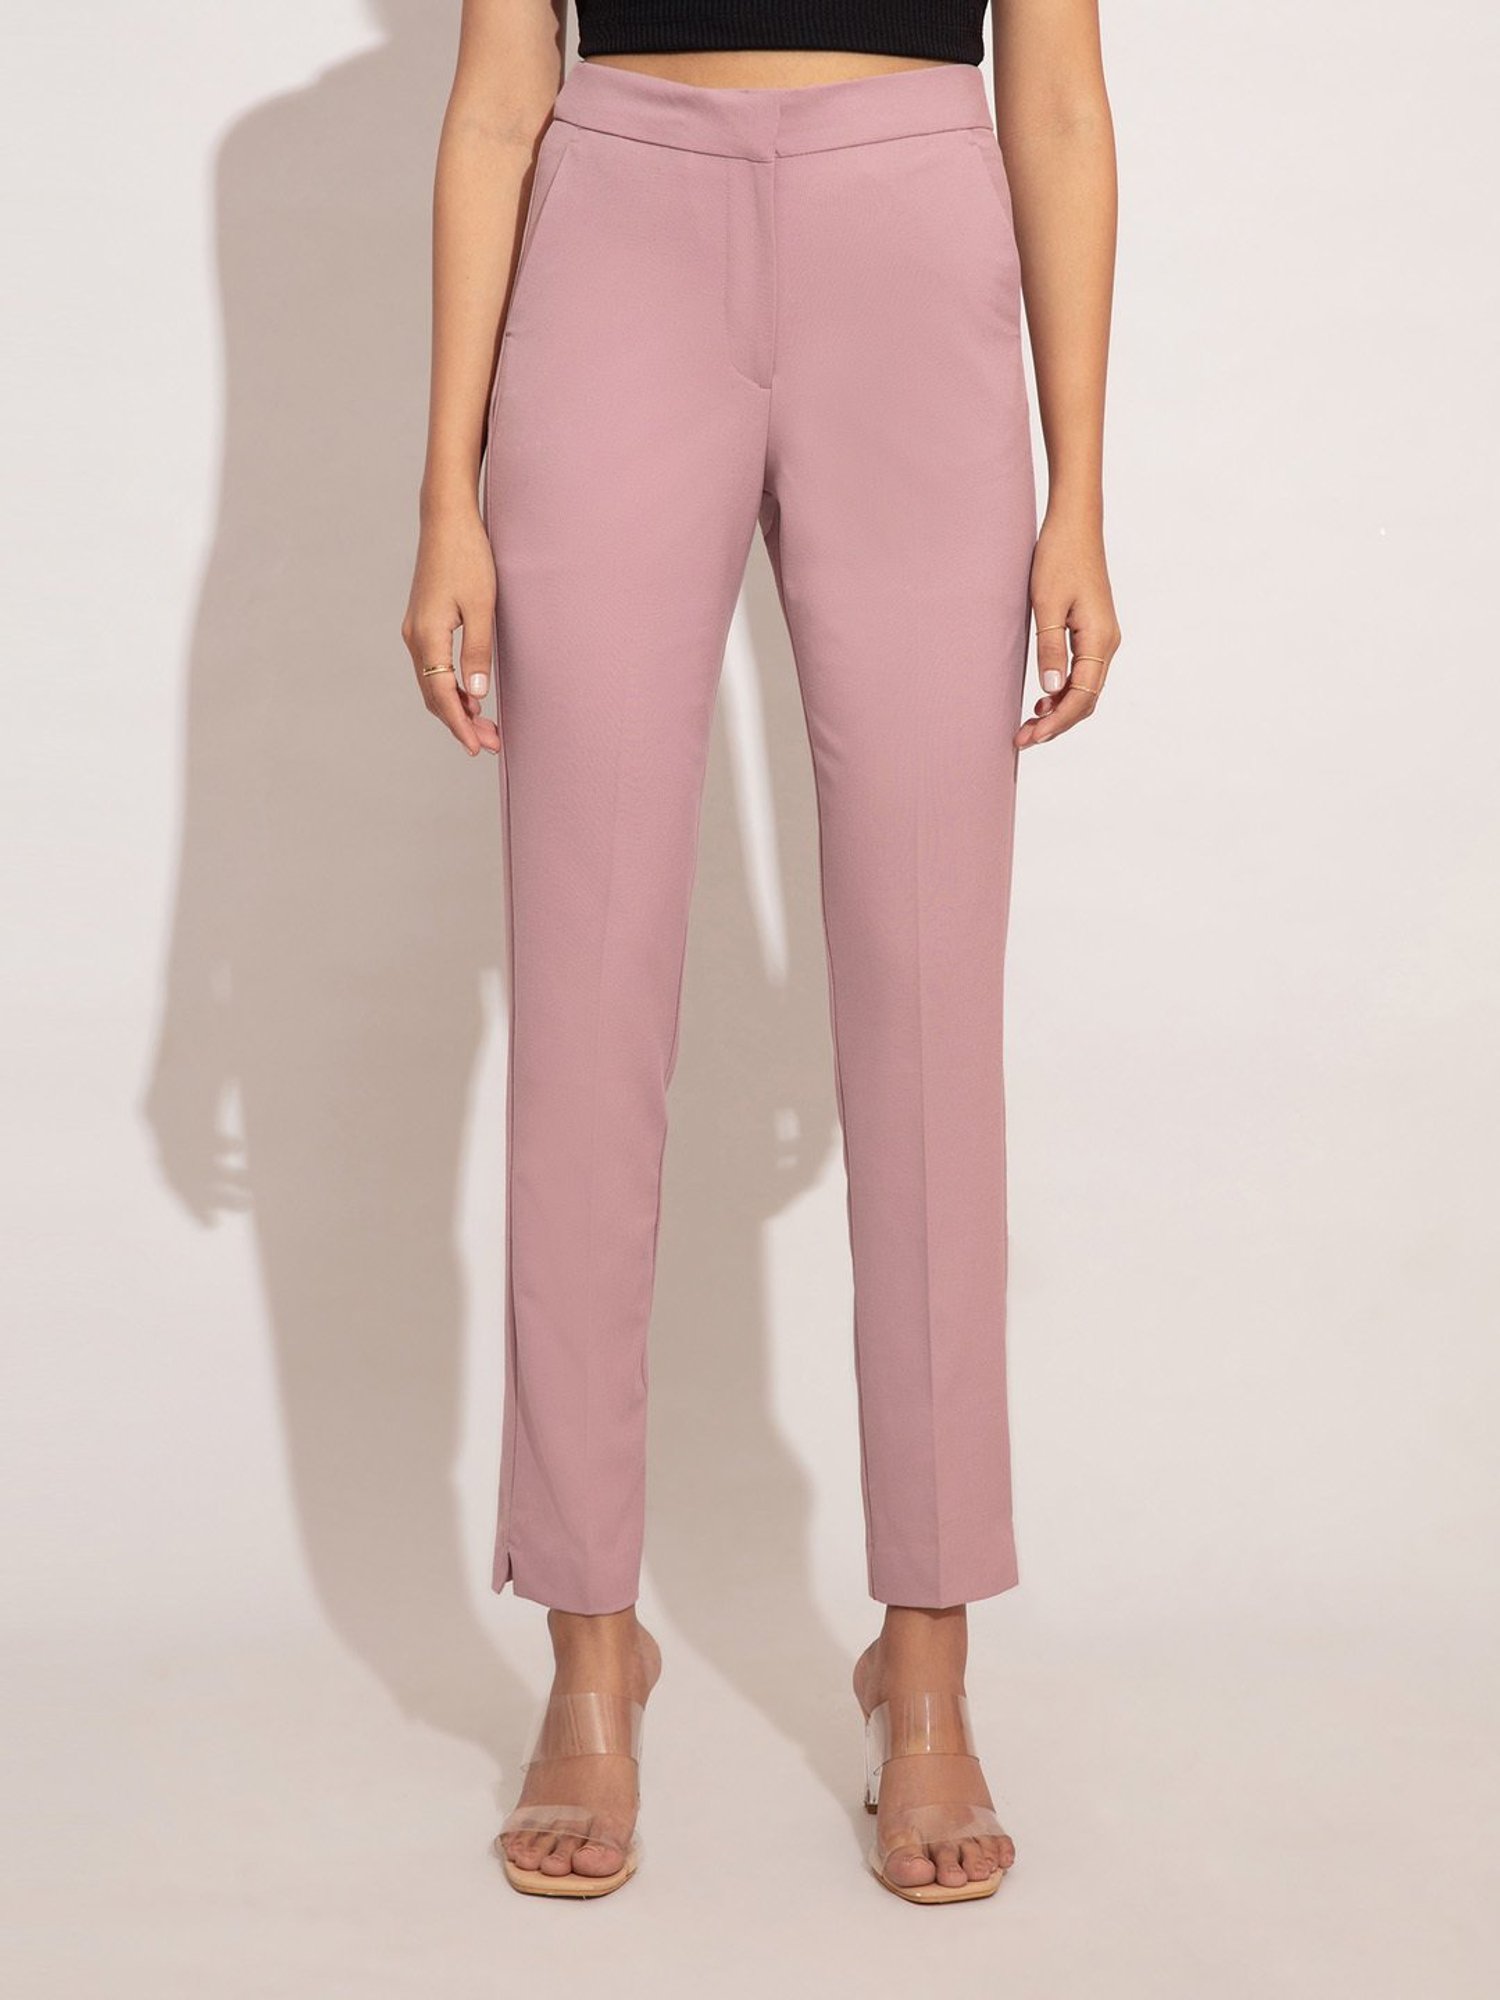 Unique Vintage Hot Pink Belted High Waist Rachelle Capri Pants